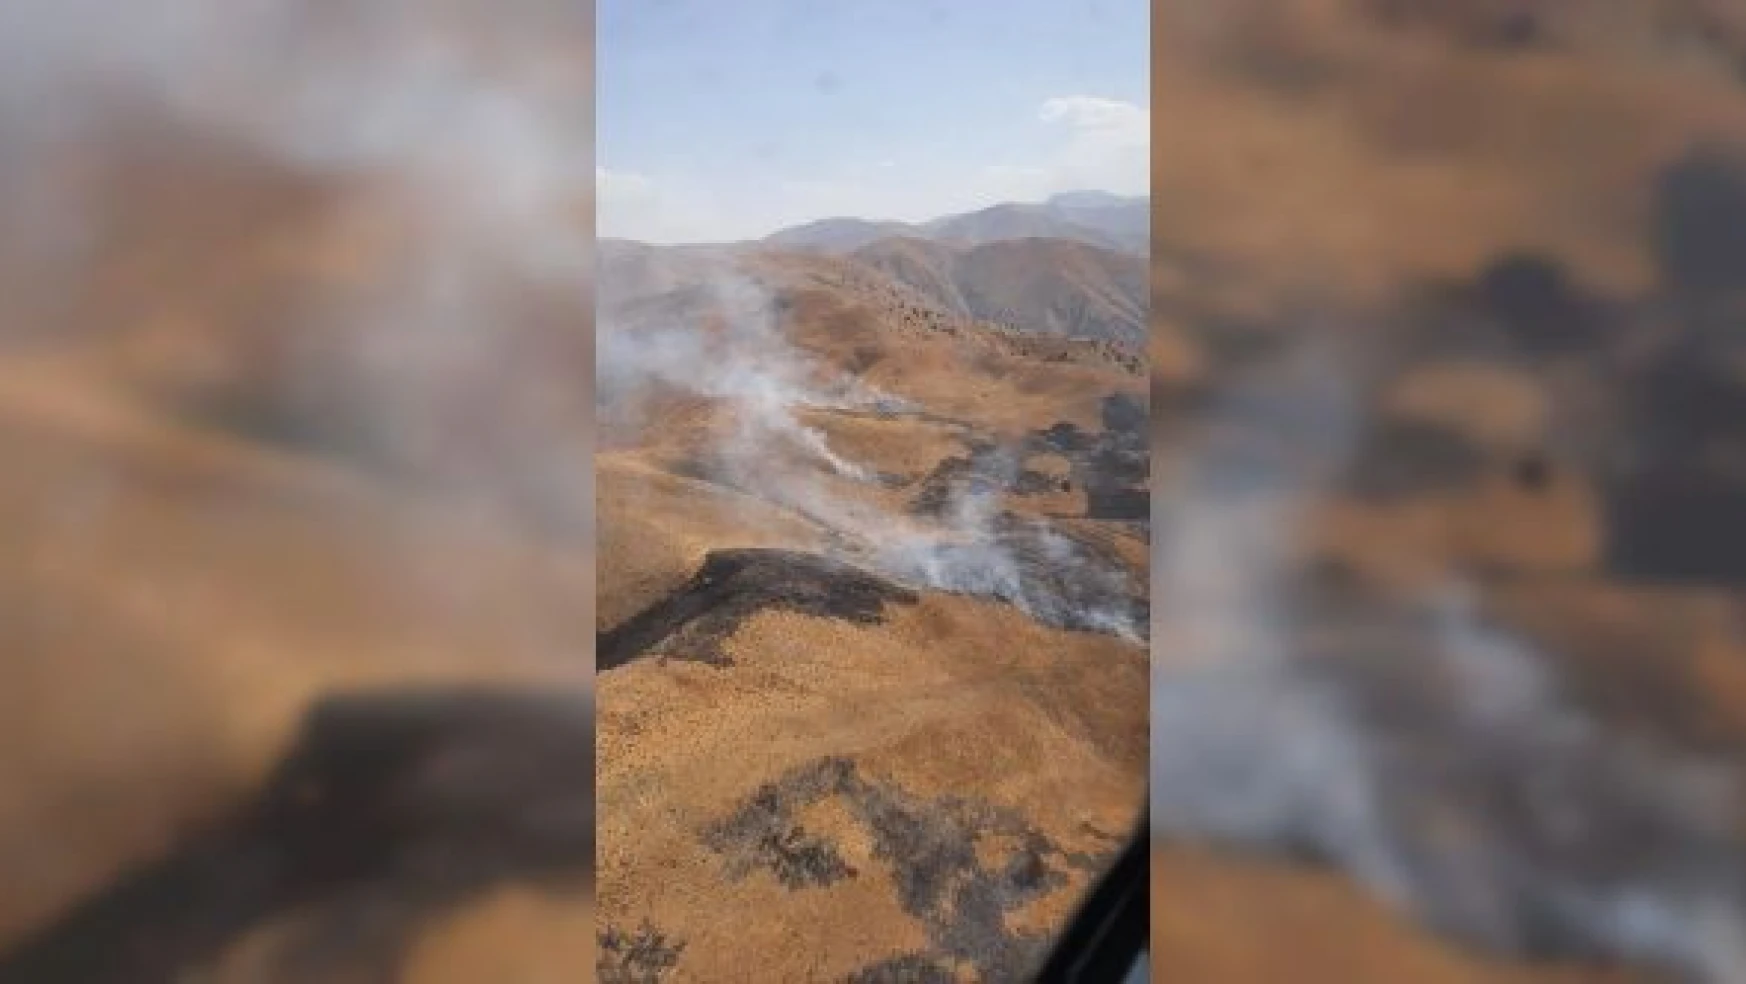 Bingöl'de örtü yangını söndürüldü